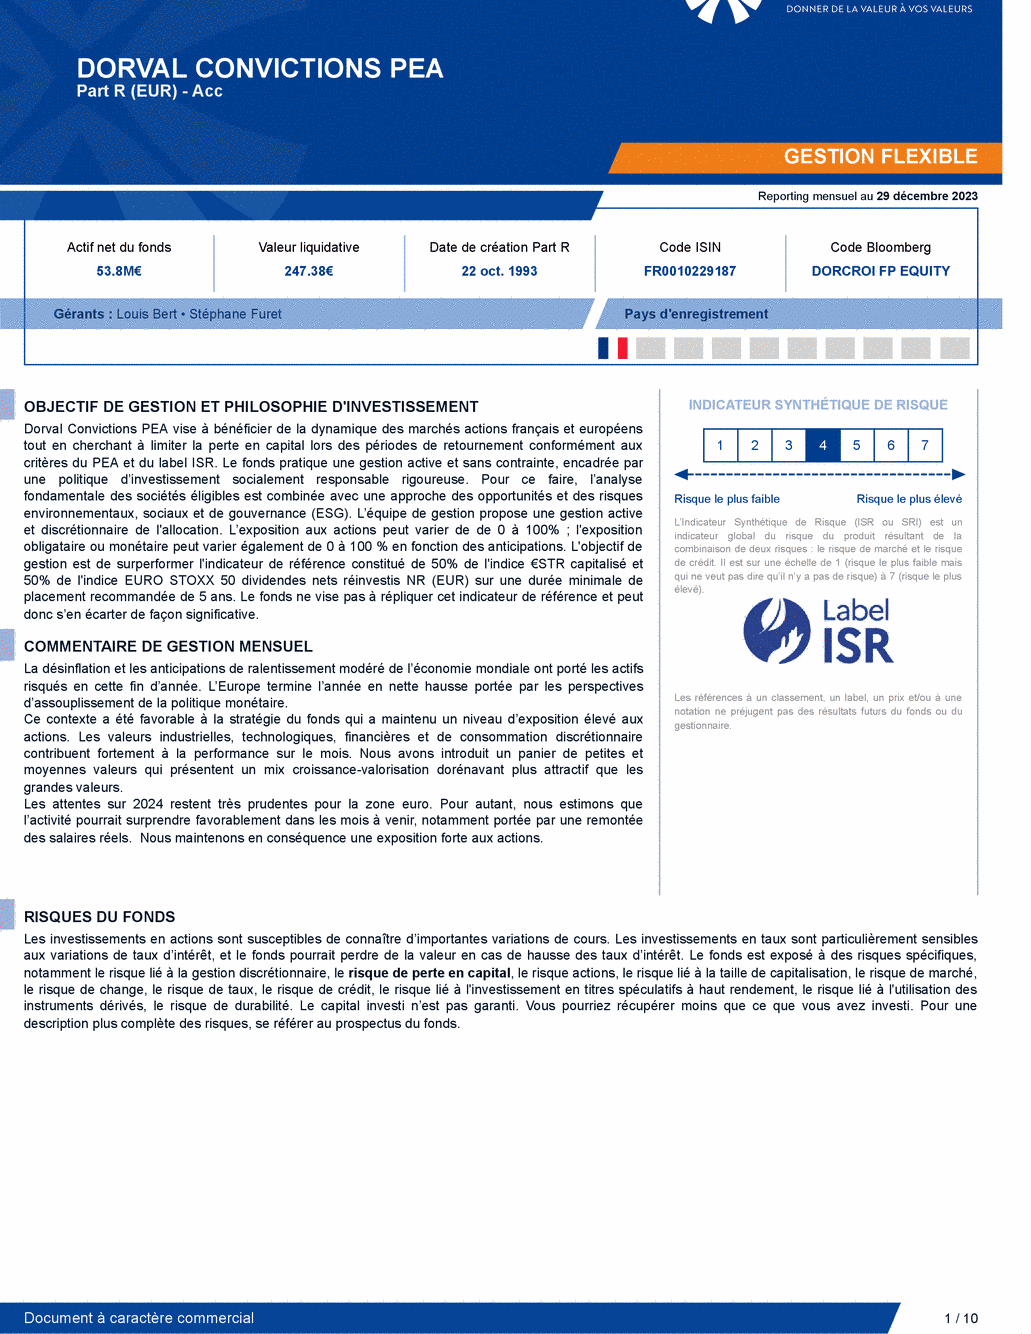 Reporting DORVAL CONVICTIONS PEA - 29/12/2023 - Français